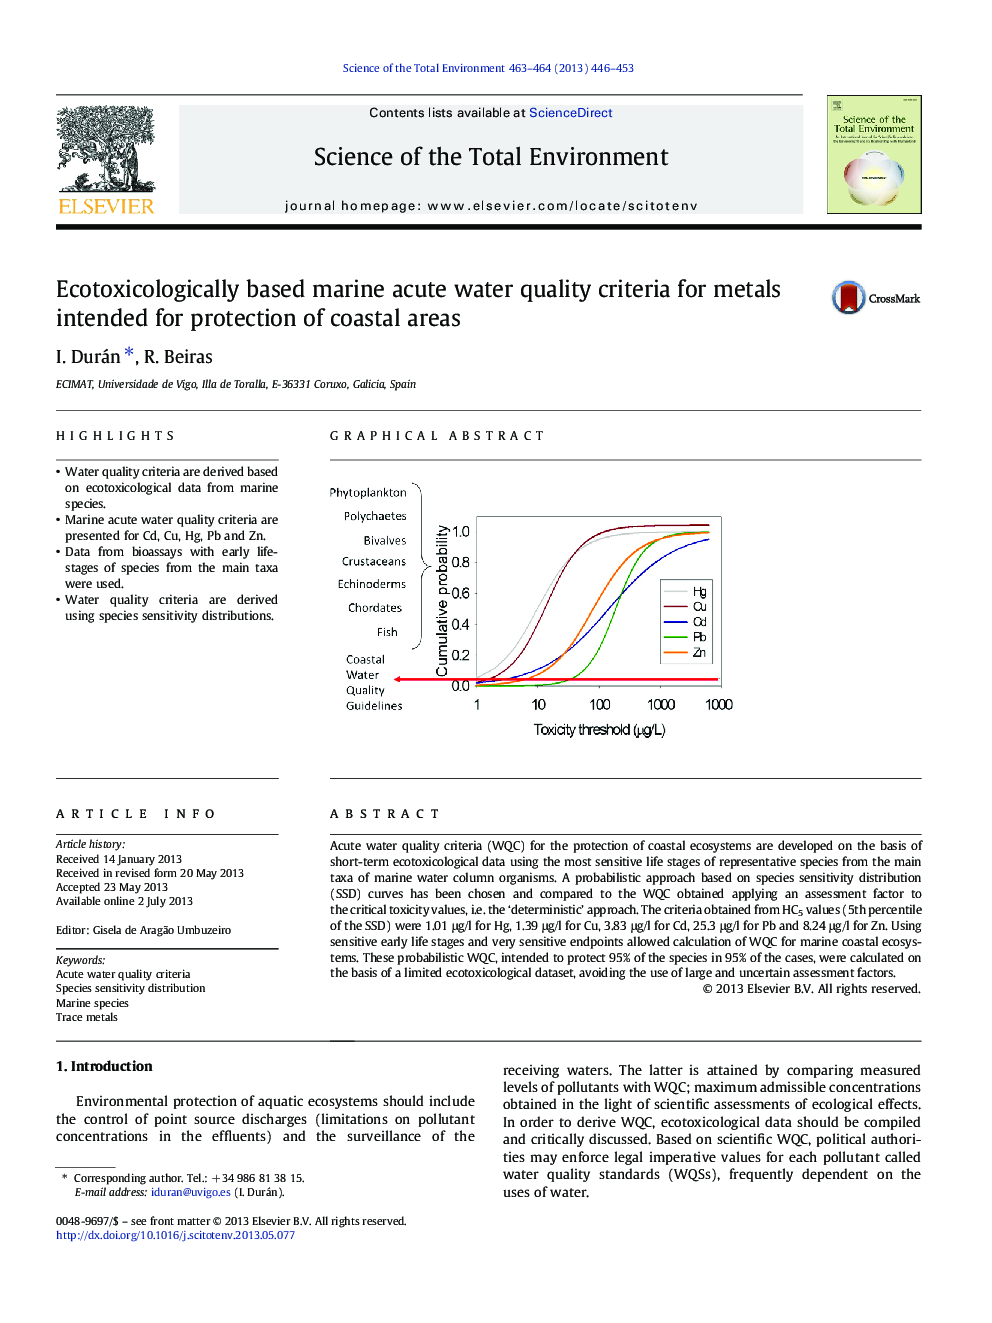 معیارهای کیفیت آب حاد دریایی بر پایه اکوتوکسیکولوژیکی برای فلزات مورد استفاده برای حفاظت از مناطق ساحلی 